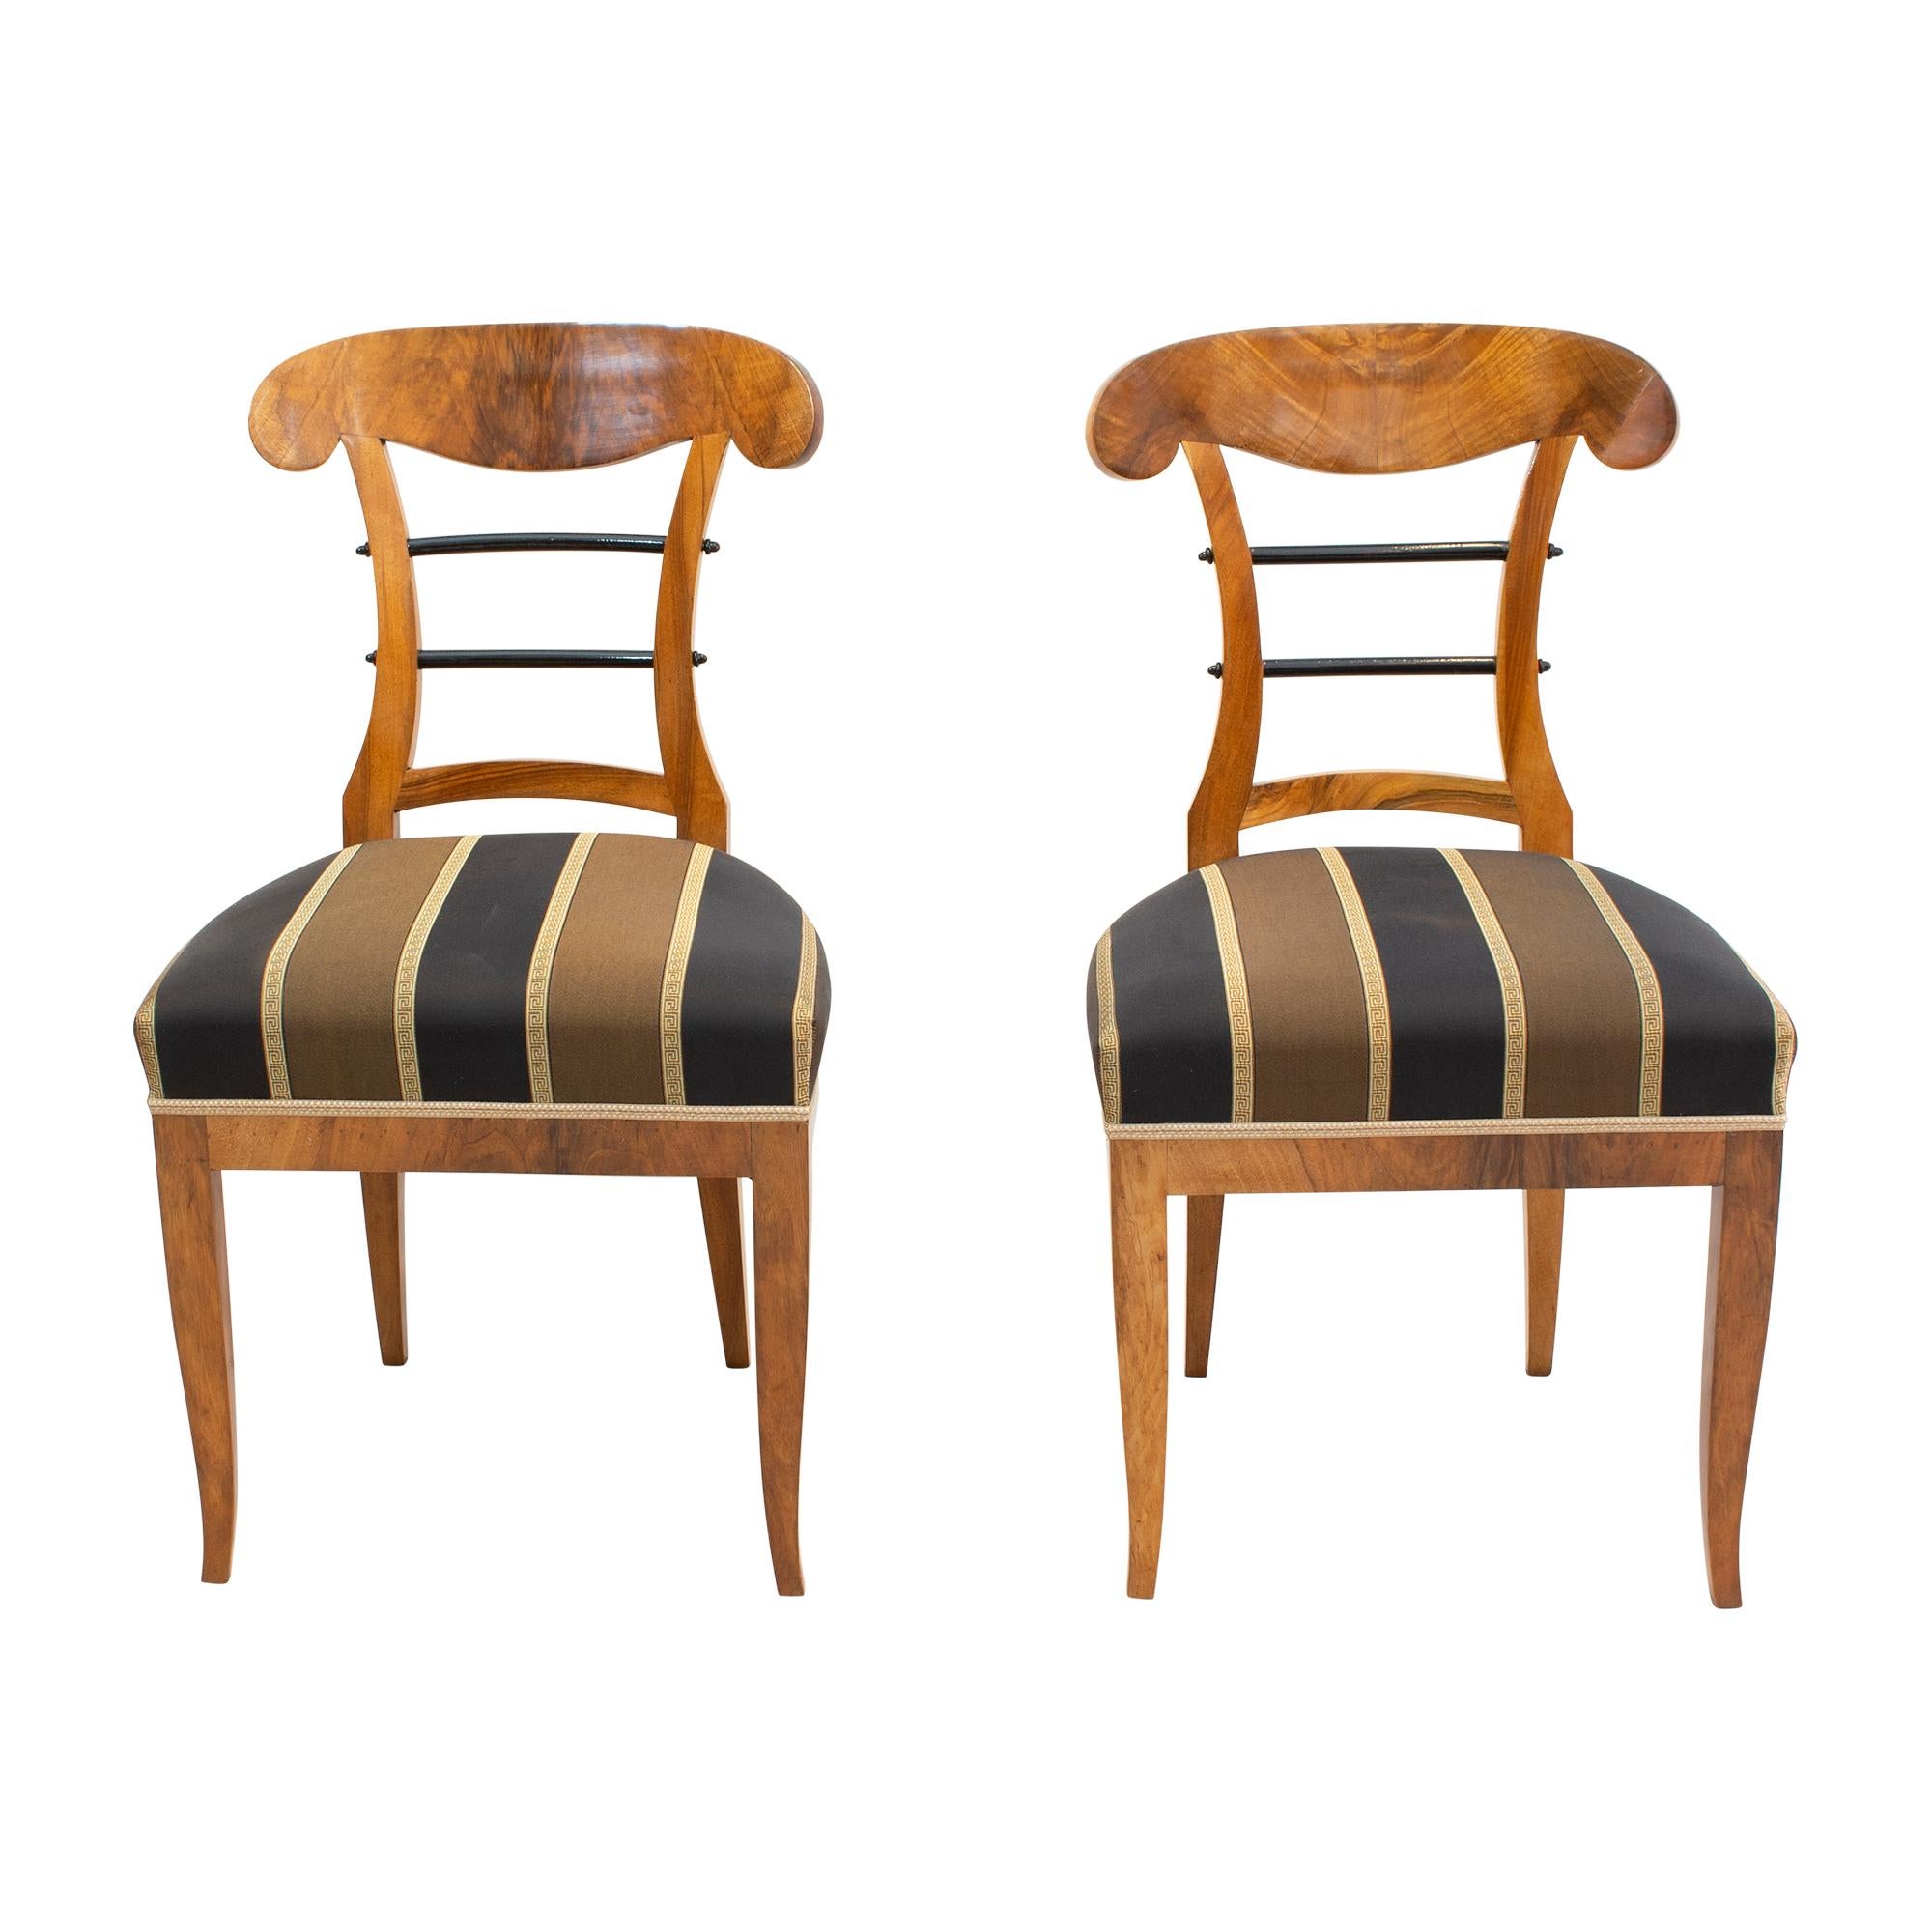 Schönes Paar Biedermeier Schaufelstühle, hergestellt um 1825 mit dickem Nussbaum und Nussbaumfurnier auf Fichtenholz. Der Stuhl wurde neu gepolstert und mit neuem Stoff bezogen. In sehr gutem restauriertem Zustand. 

Bitte beachten Sie, dass wir